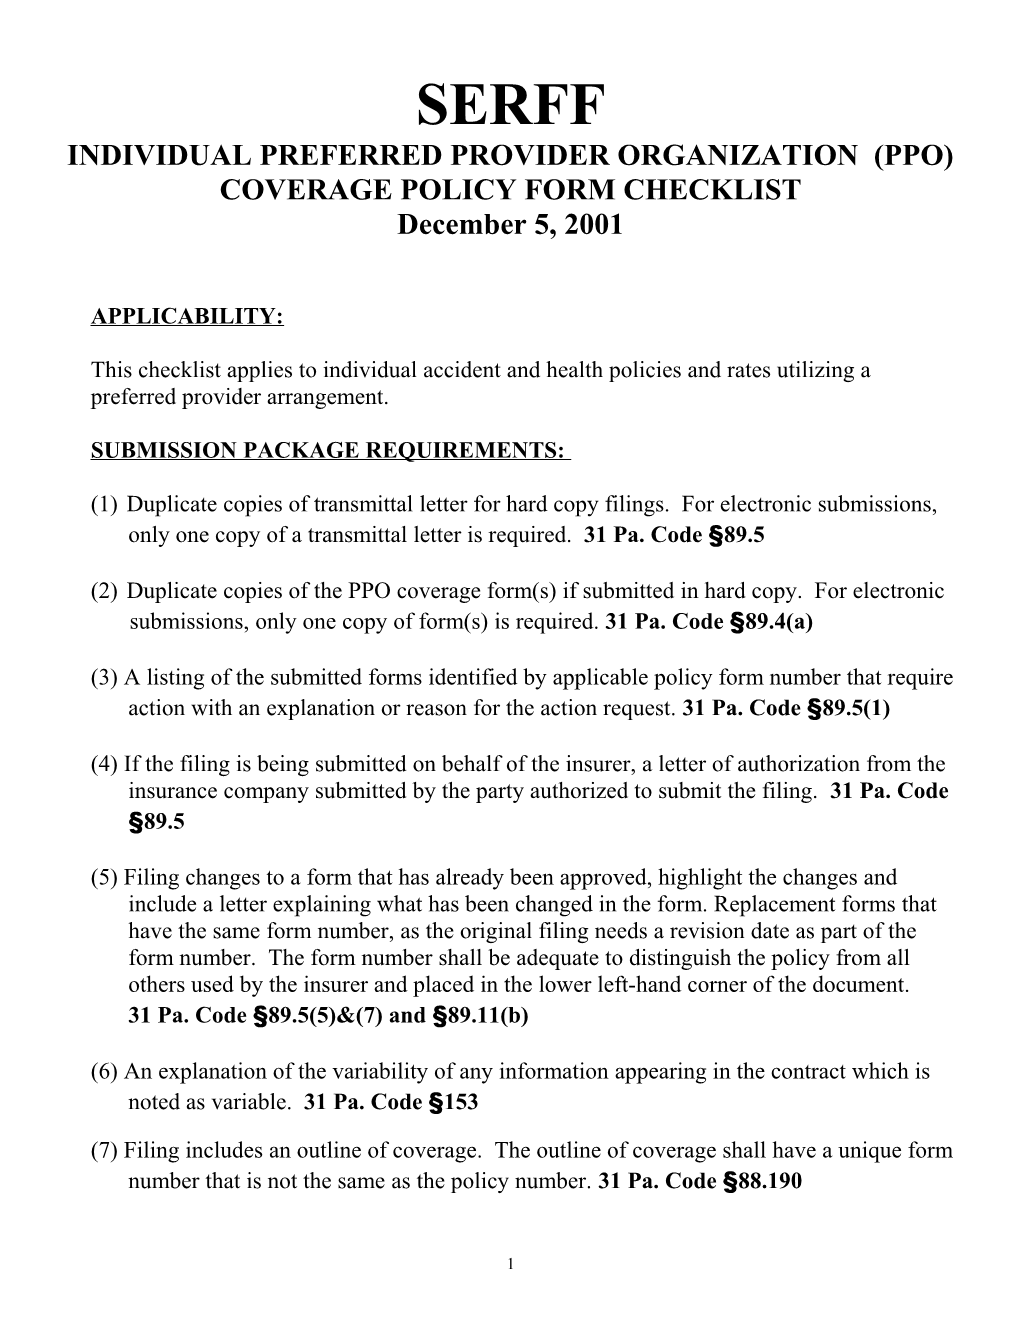 Individual Preferred Provider Organization (Ppo) Coverage Policy Form Checklist